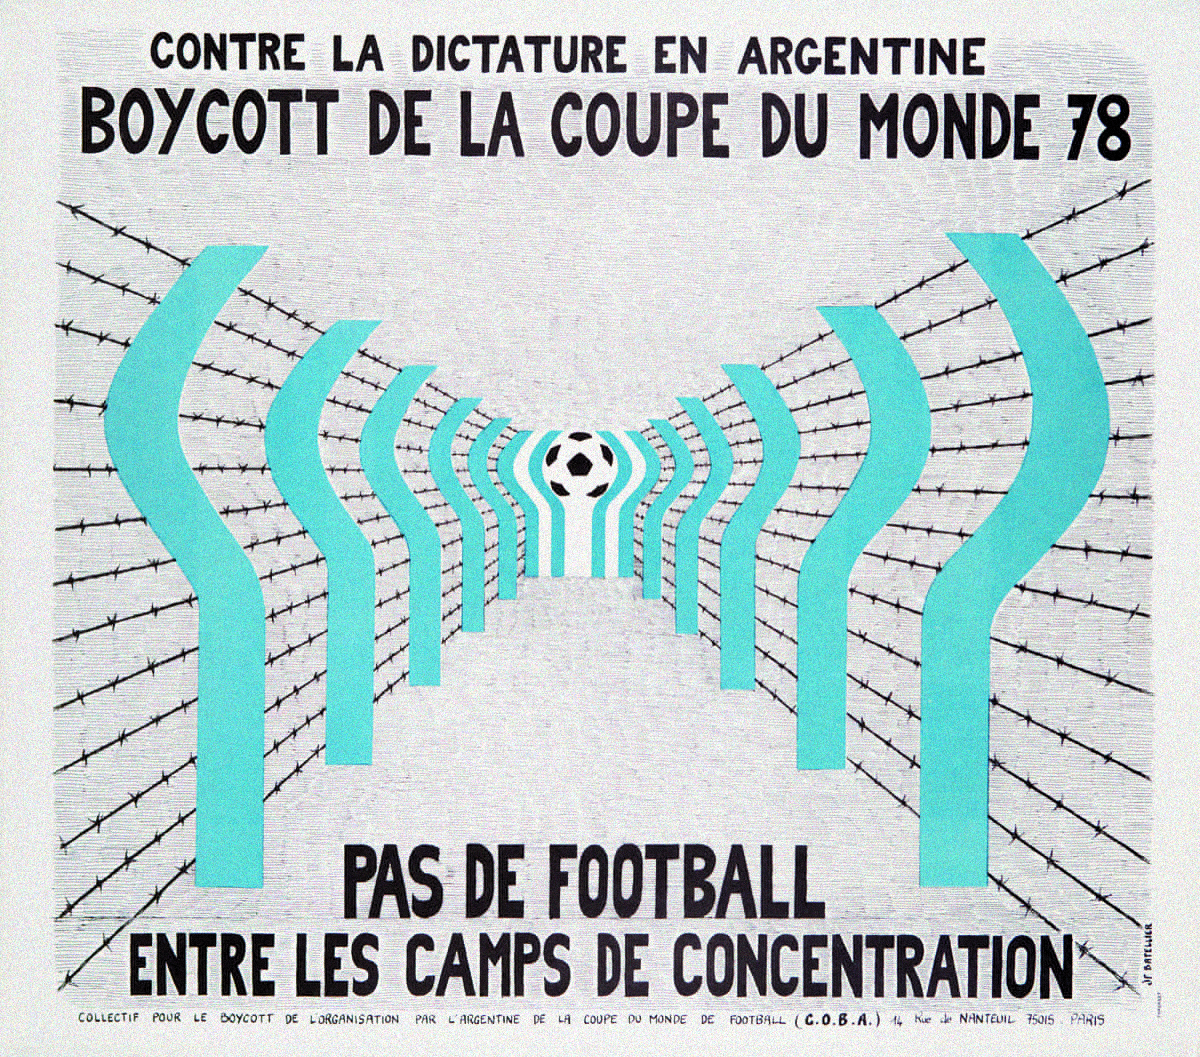 COBA: Coletivo pelo Boicote da Copa do Mundo na Argentina